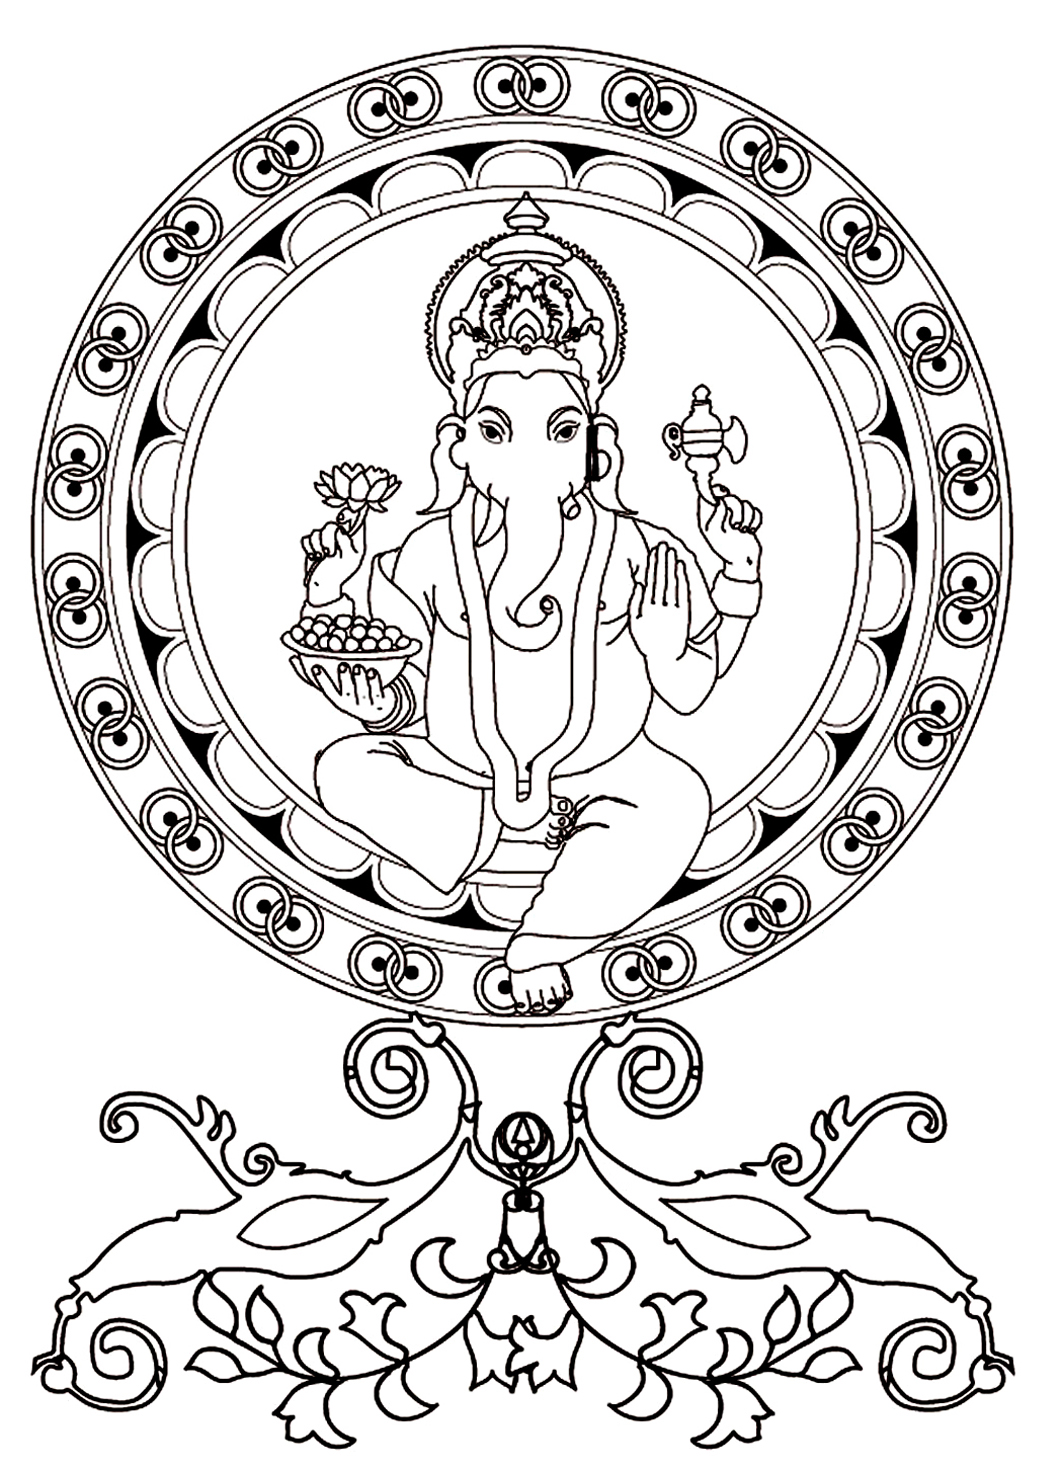 Página para colorir representando Ganesh, o deus com cabeça de elefante e o mais venerado na Índia